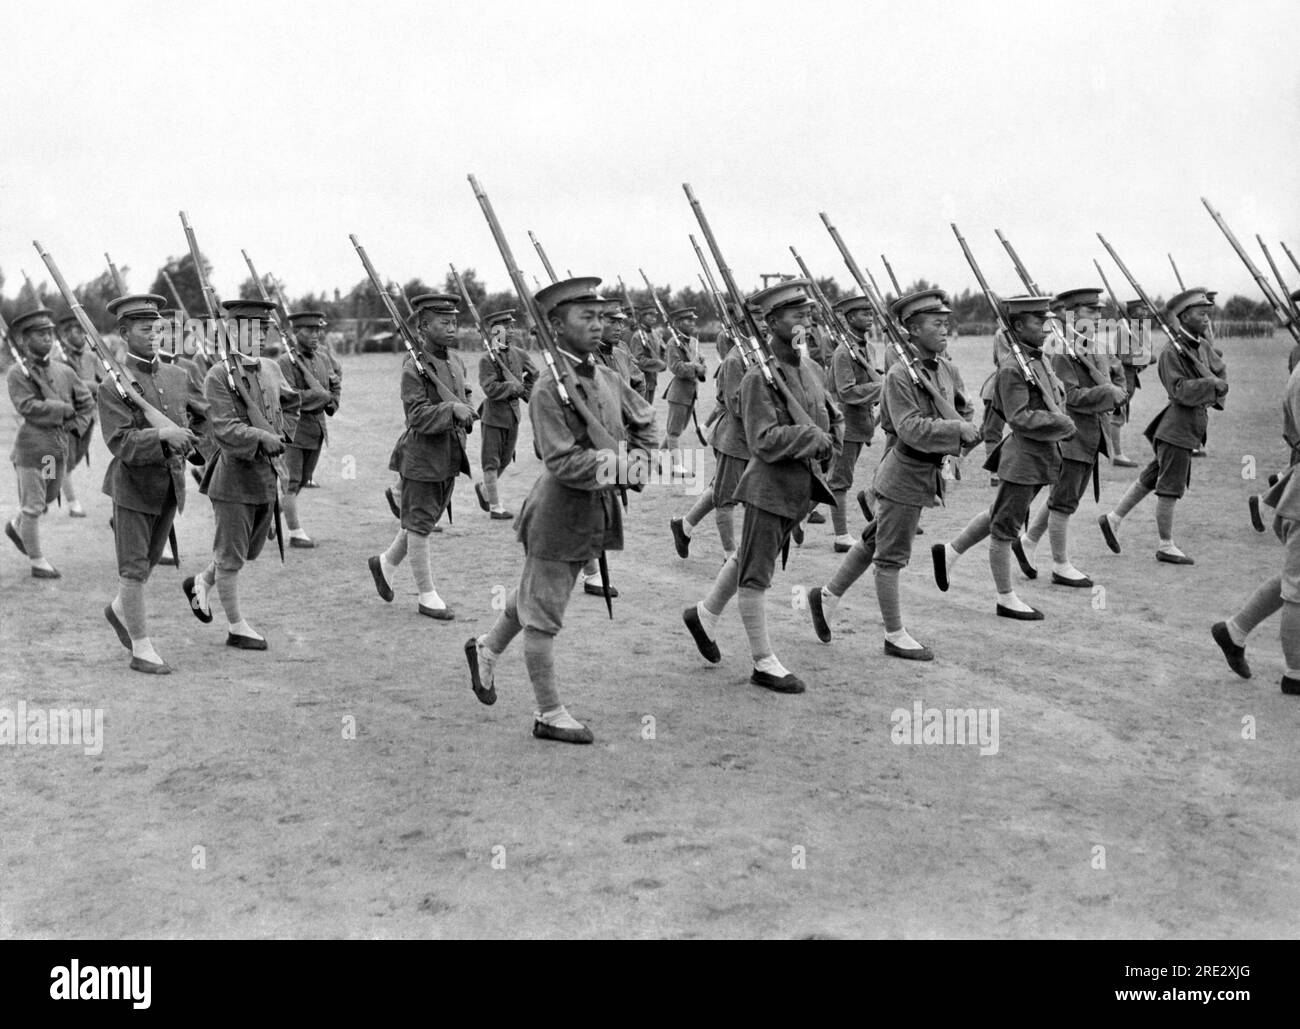 Pechino, Cina 22 agosto 1923 i membri dell'esercito del generale Wu Pei-fu, il più grande militarista e stratega cinese, stanno seguendo la loro formazione. Sono loro il vero potere dietro Pechino. Eccoli in marcia nel loro stile particolare. Foto Stock